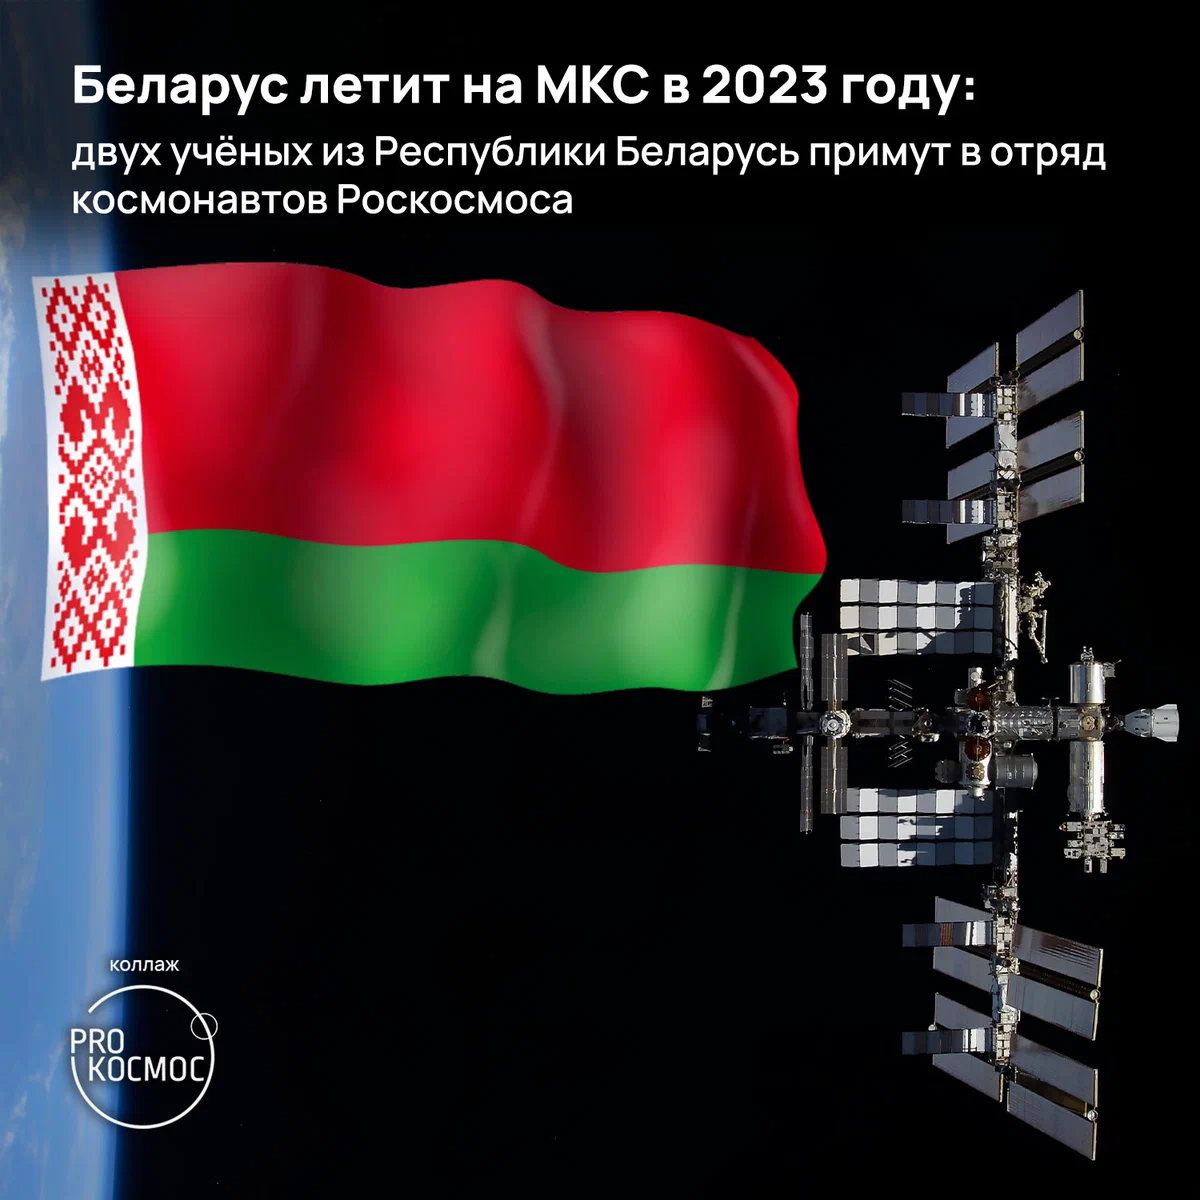 Беларус летит на МКС в 2023 году: двух учёных из Республики Беларусь примут в отряд космонавтов Роскосмоса height=1200px width=1200px